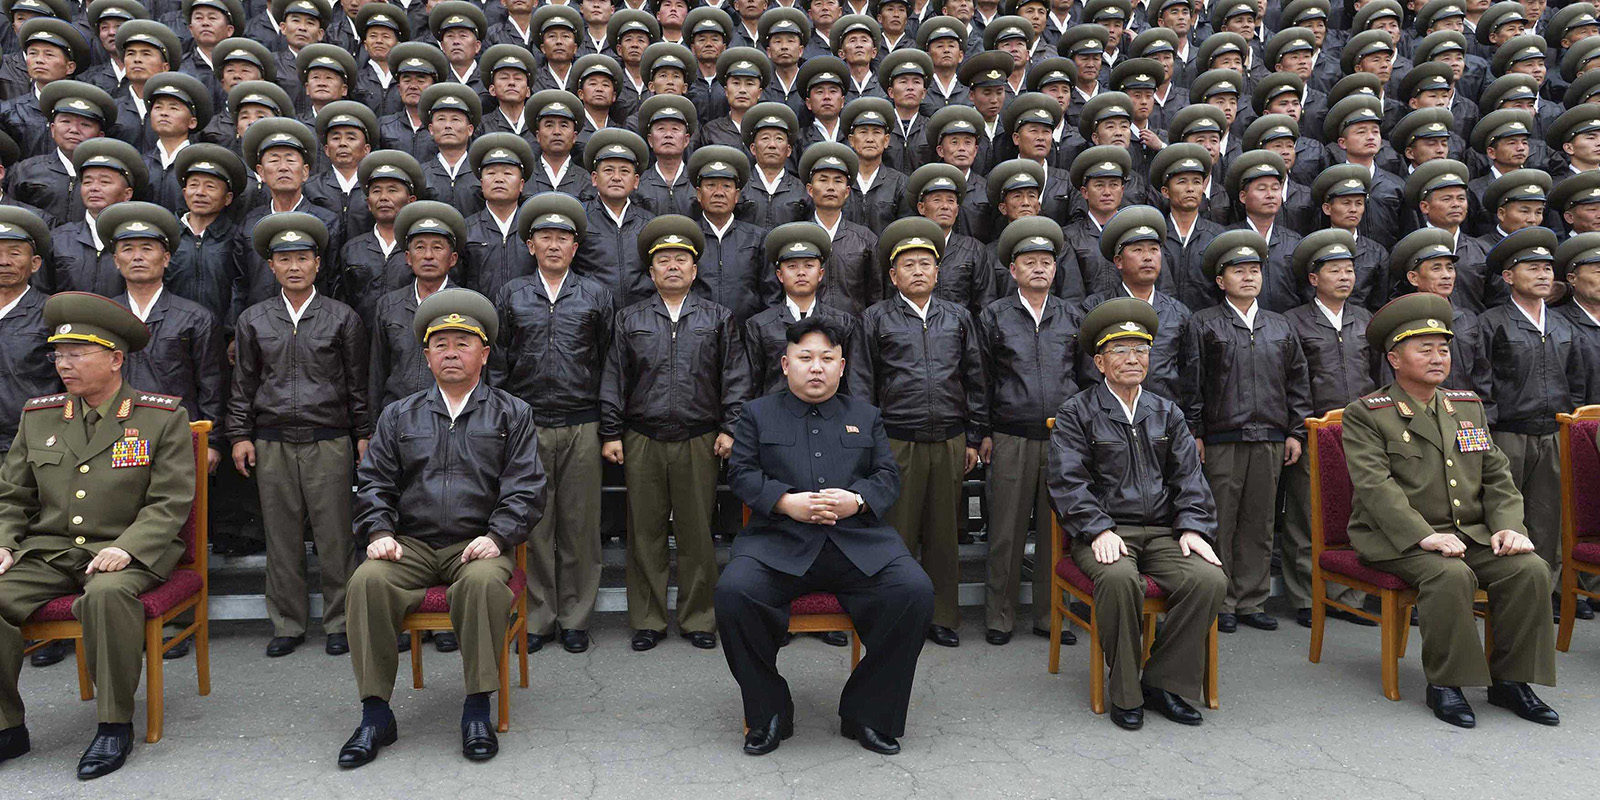 Los videojuegos en Corea del Norte - El reflejo de una sociedad a través del juego